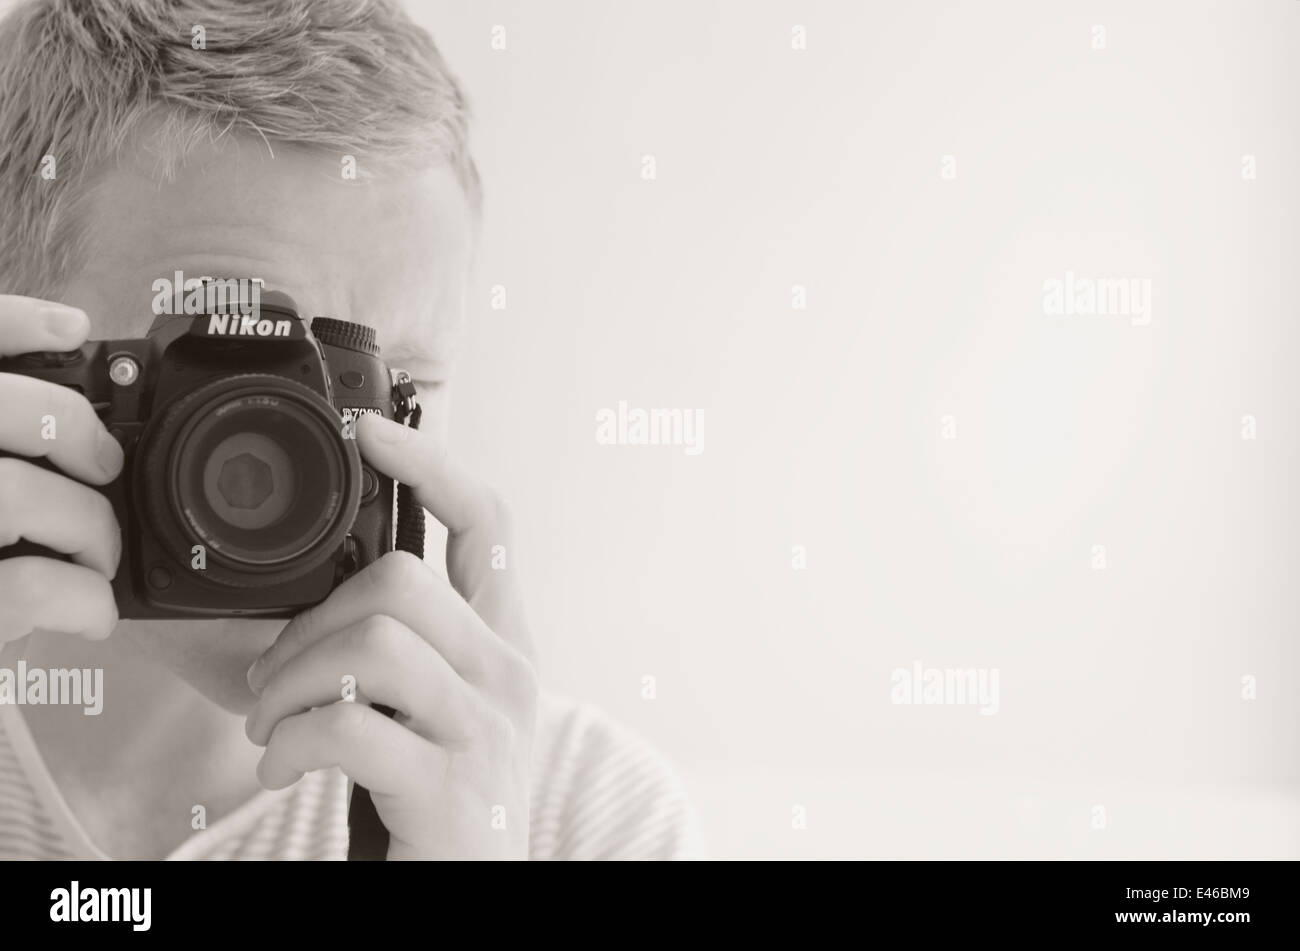 Reflex numérique Nikon, homme selfies Banque D'Images